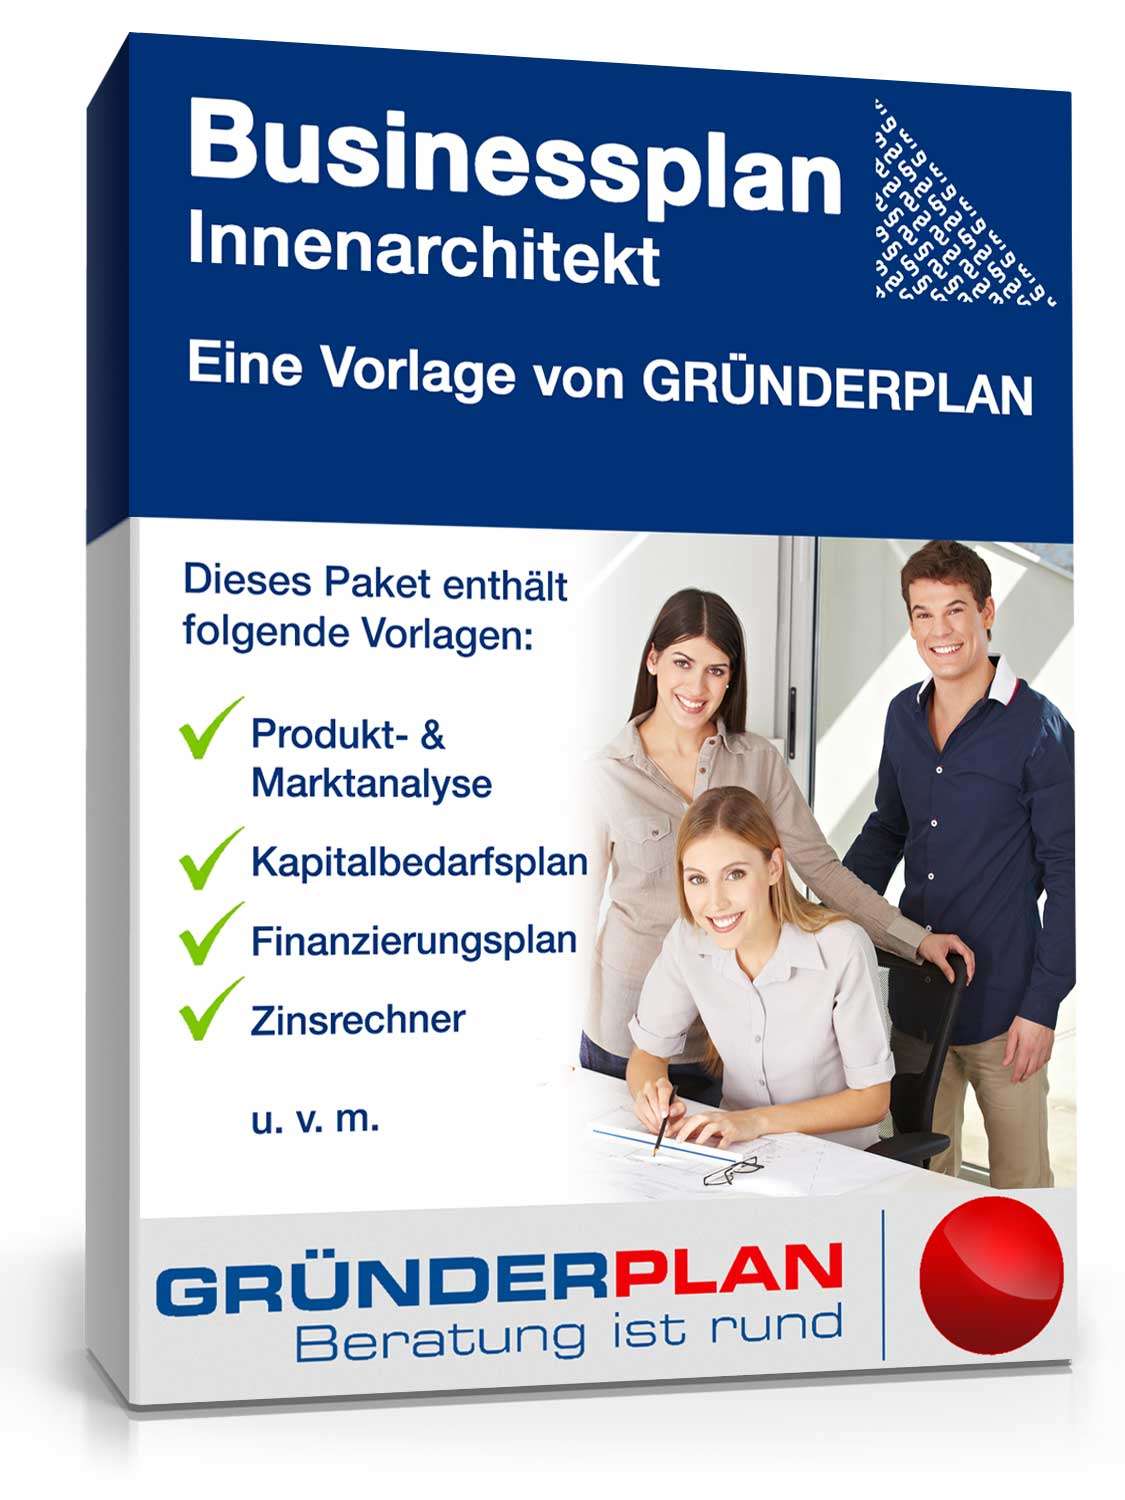 Hauptbild des Produkts: Businessplan Innenarchitekt von Gründerplan